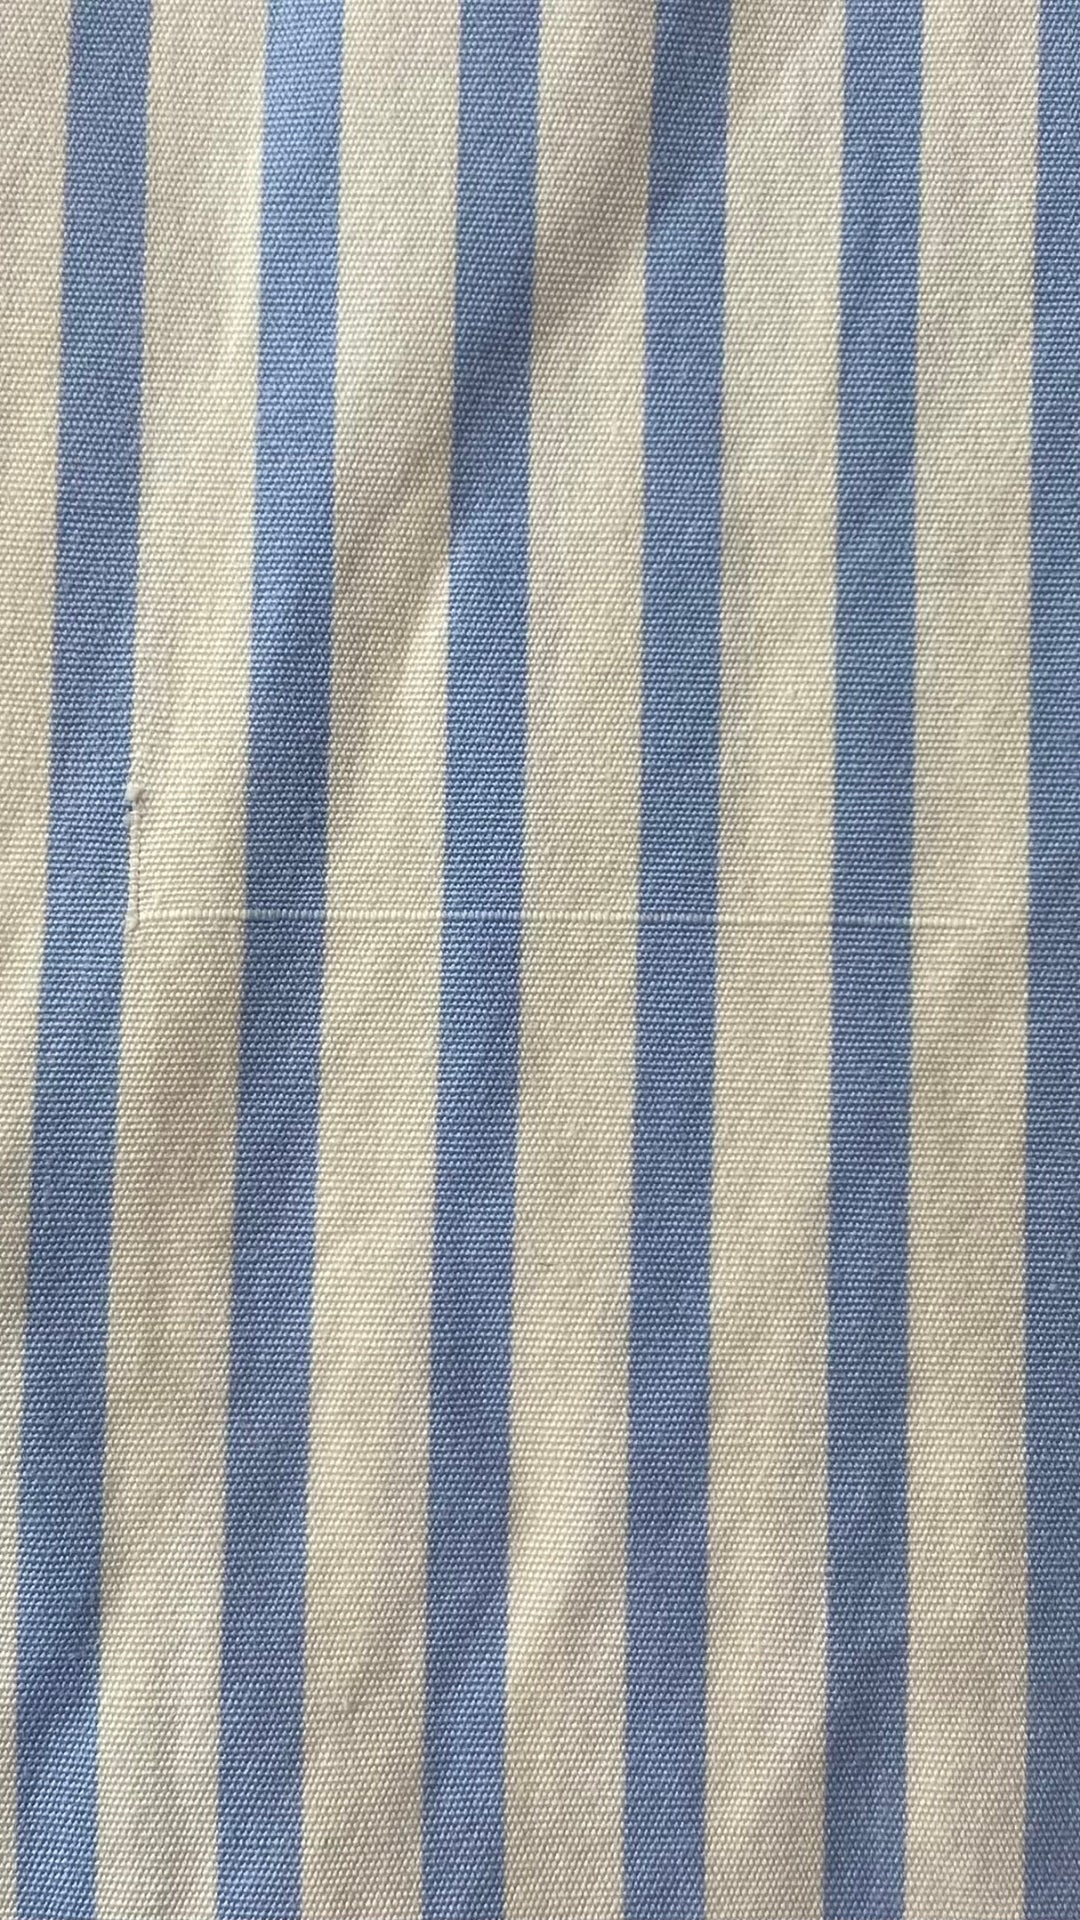 Chemisier à rayures en coton Lauren Ralph Lauren, taille 3X. Vue de la petite ligne dans le tissu.